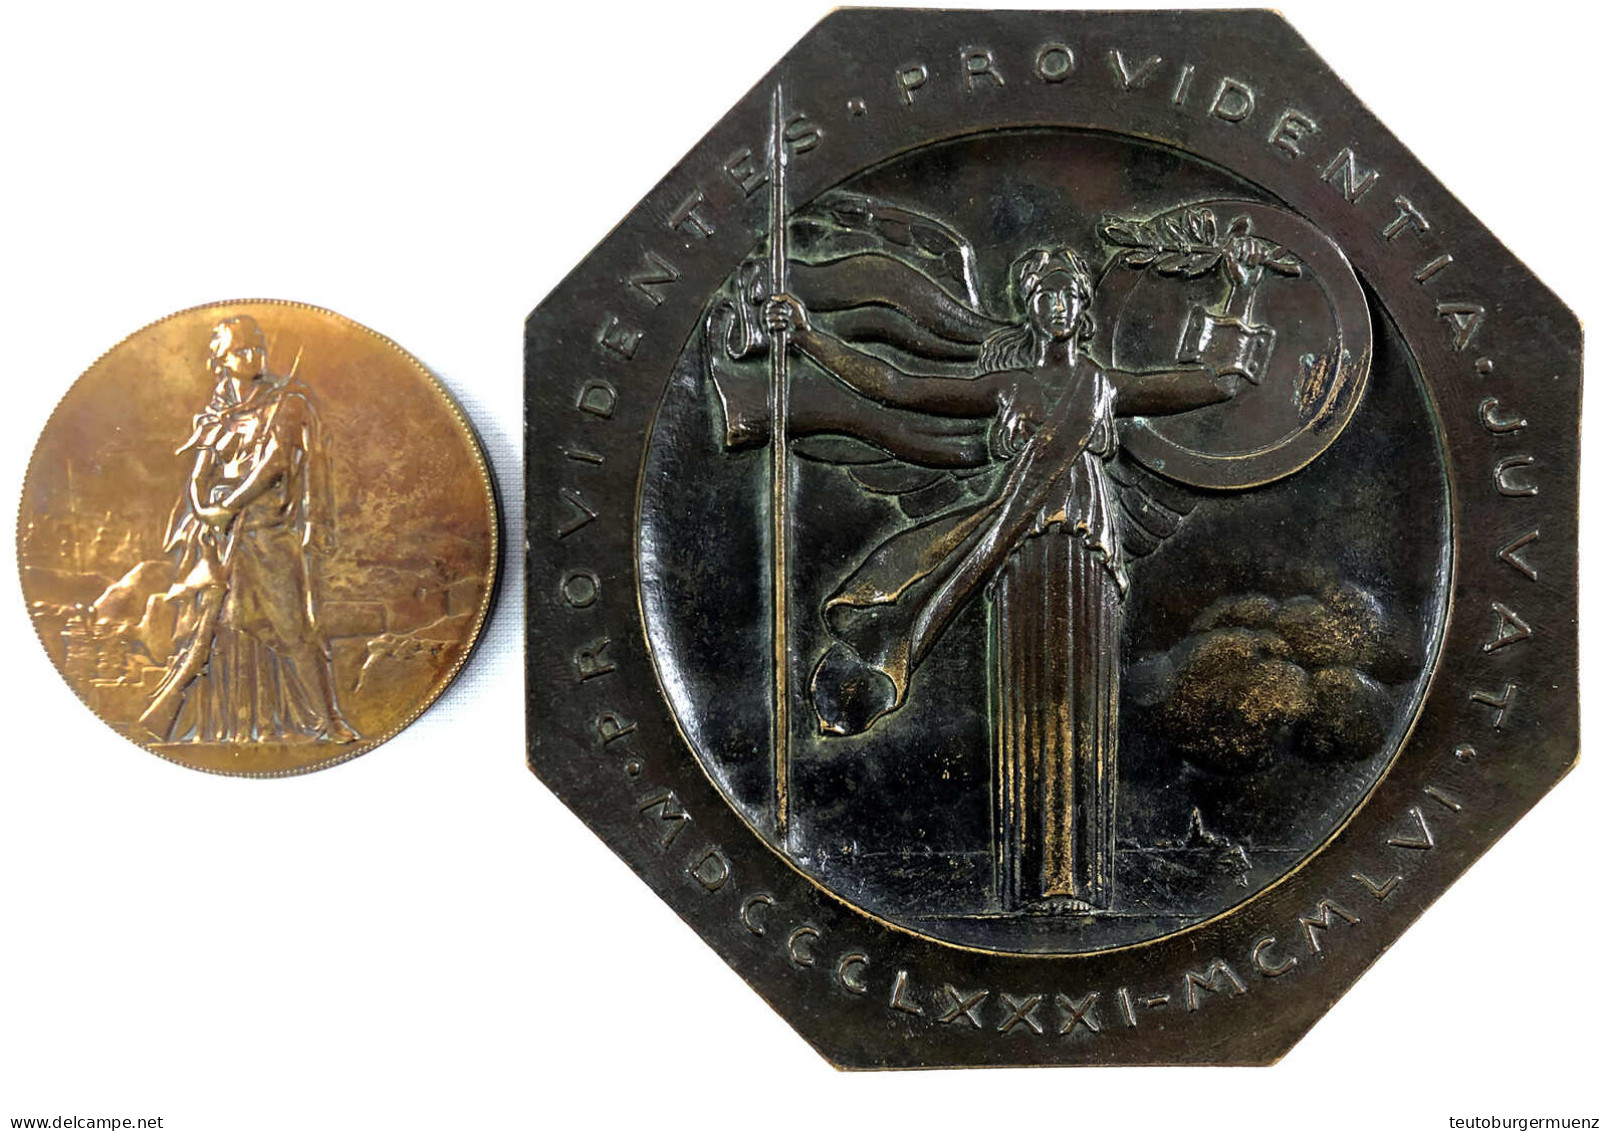 2 Stück: Große Achteckige Bronzeplakette 1956 Von Turin (158 Mm), Bronzemedaille 1871 A.d. Belagerung Von Paris (73 Mm). - Collezioni